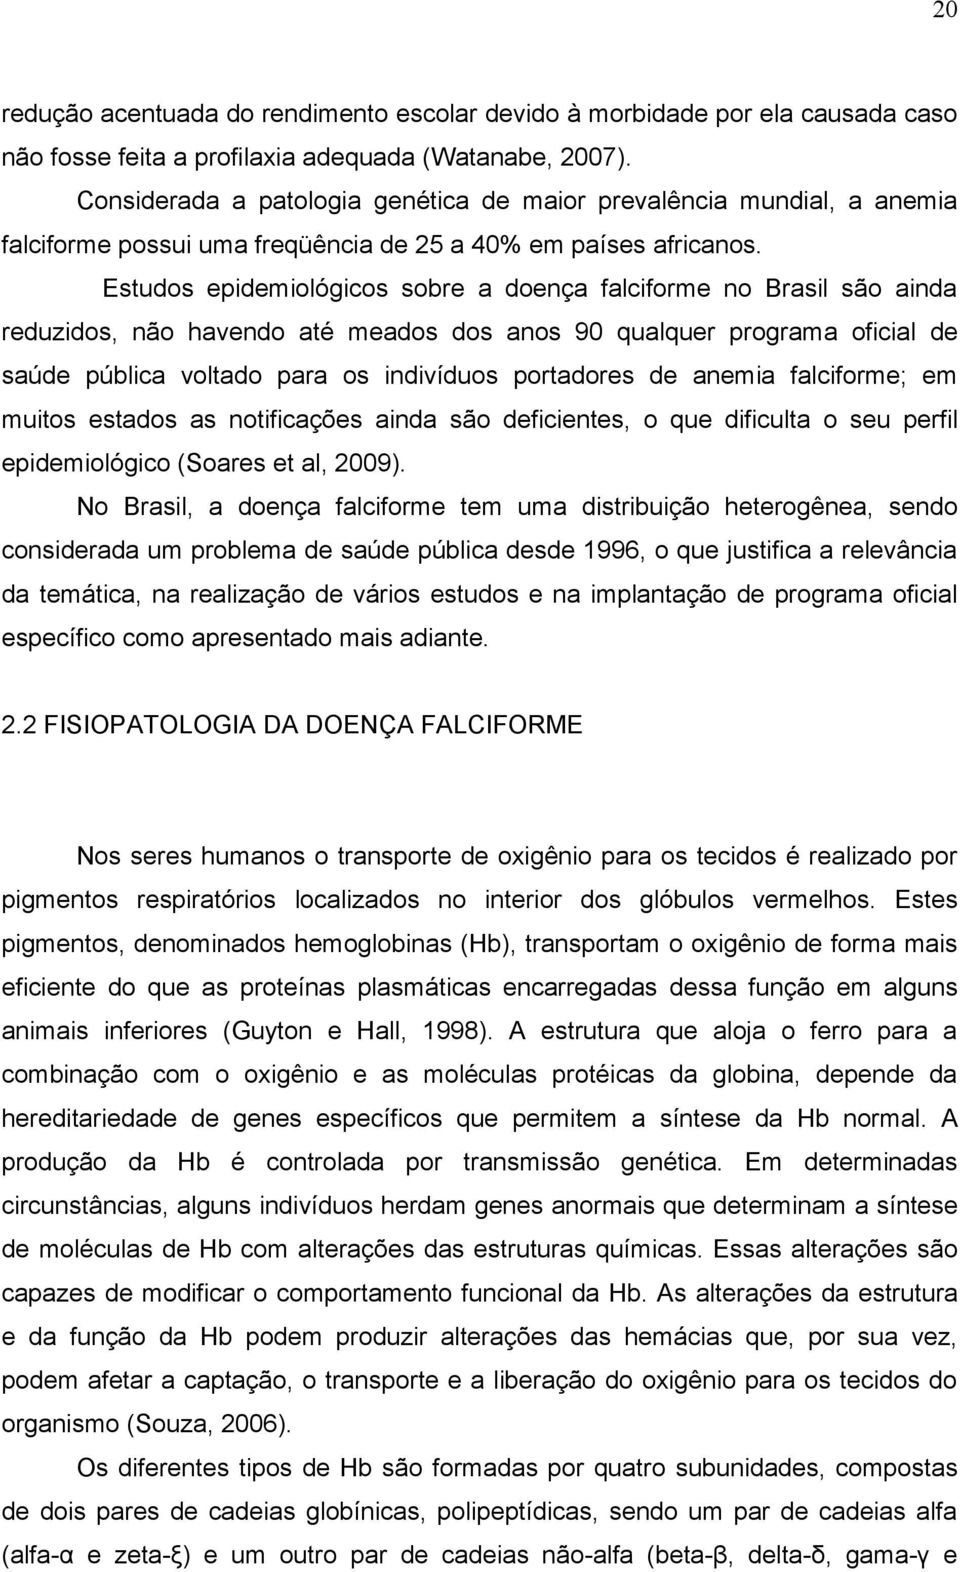 Estudos epidemiológicos sobre a doença falciforme no Brasil são ainda reduzidos, não havendo até meados dos anos 90 qualquer programa oficial de saúde pública voltado para os indivíduos portadores de